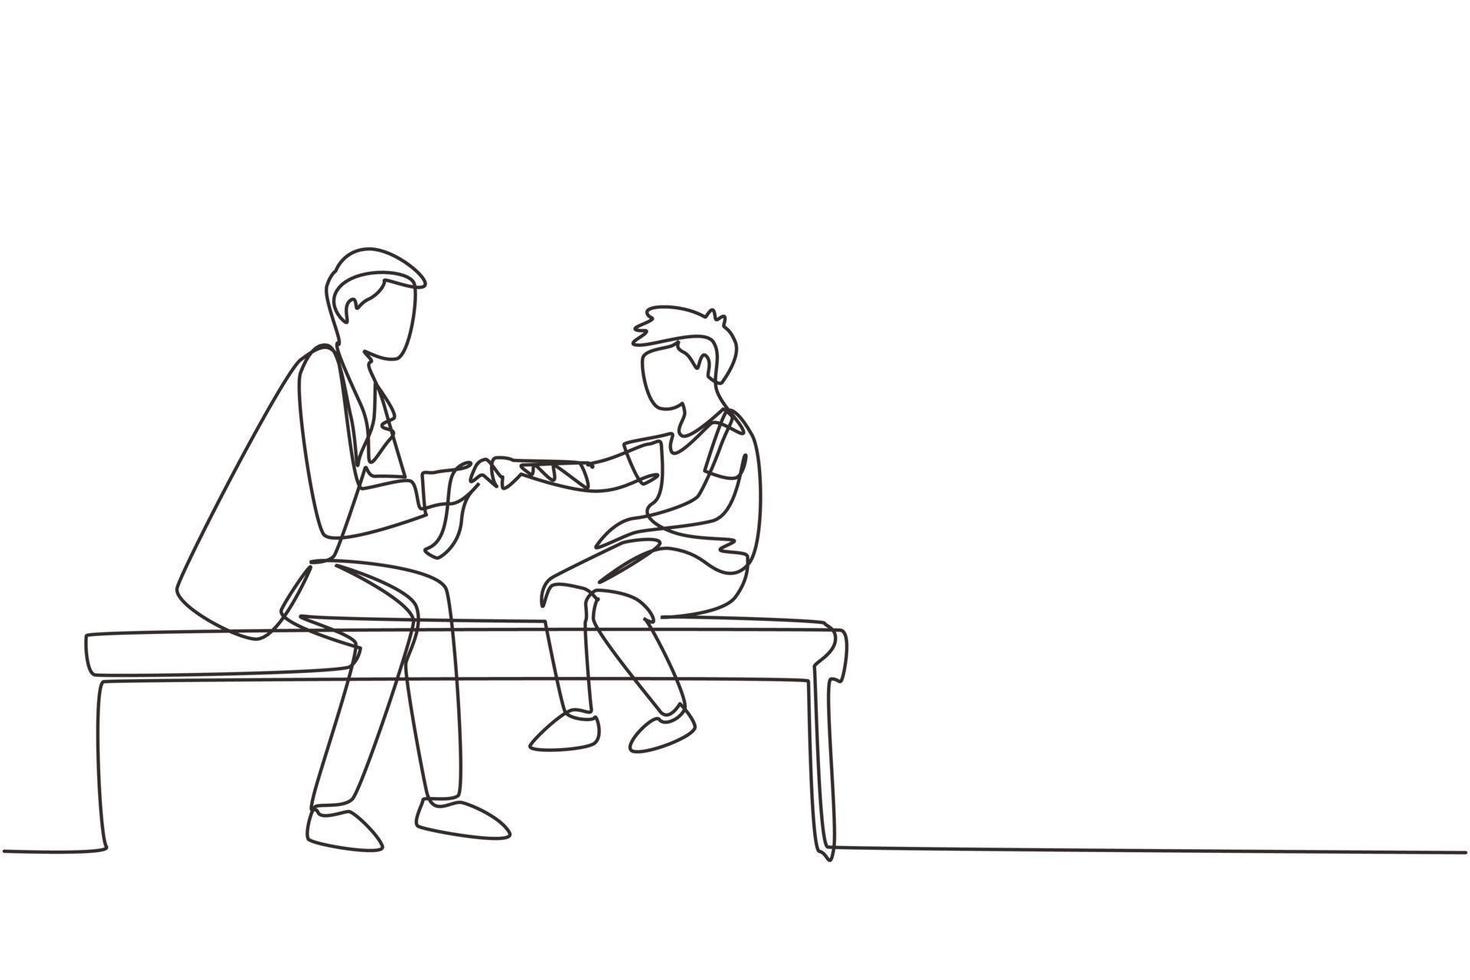 el médico infantil de dibujo continuo de una línea trabaja con un niño pequeño. el ortopedista venda la mano del niño. médico que trata al niño en el consultorio médico o en el hospital. ilustración de vector de diseño de dibujo de una sola línea